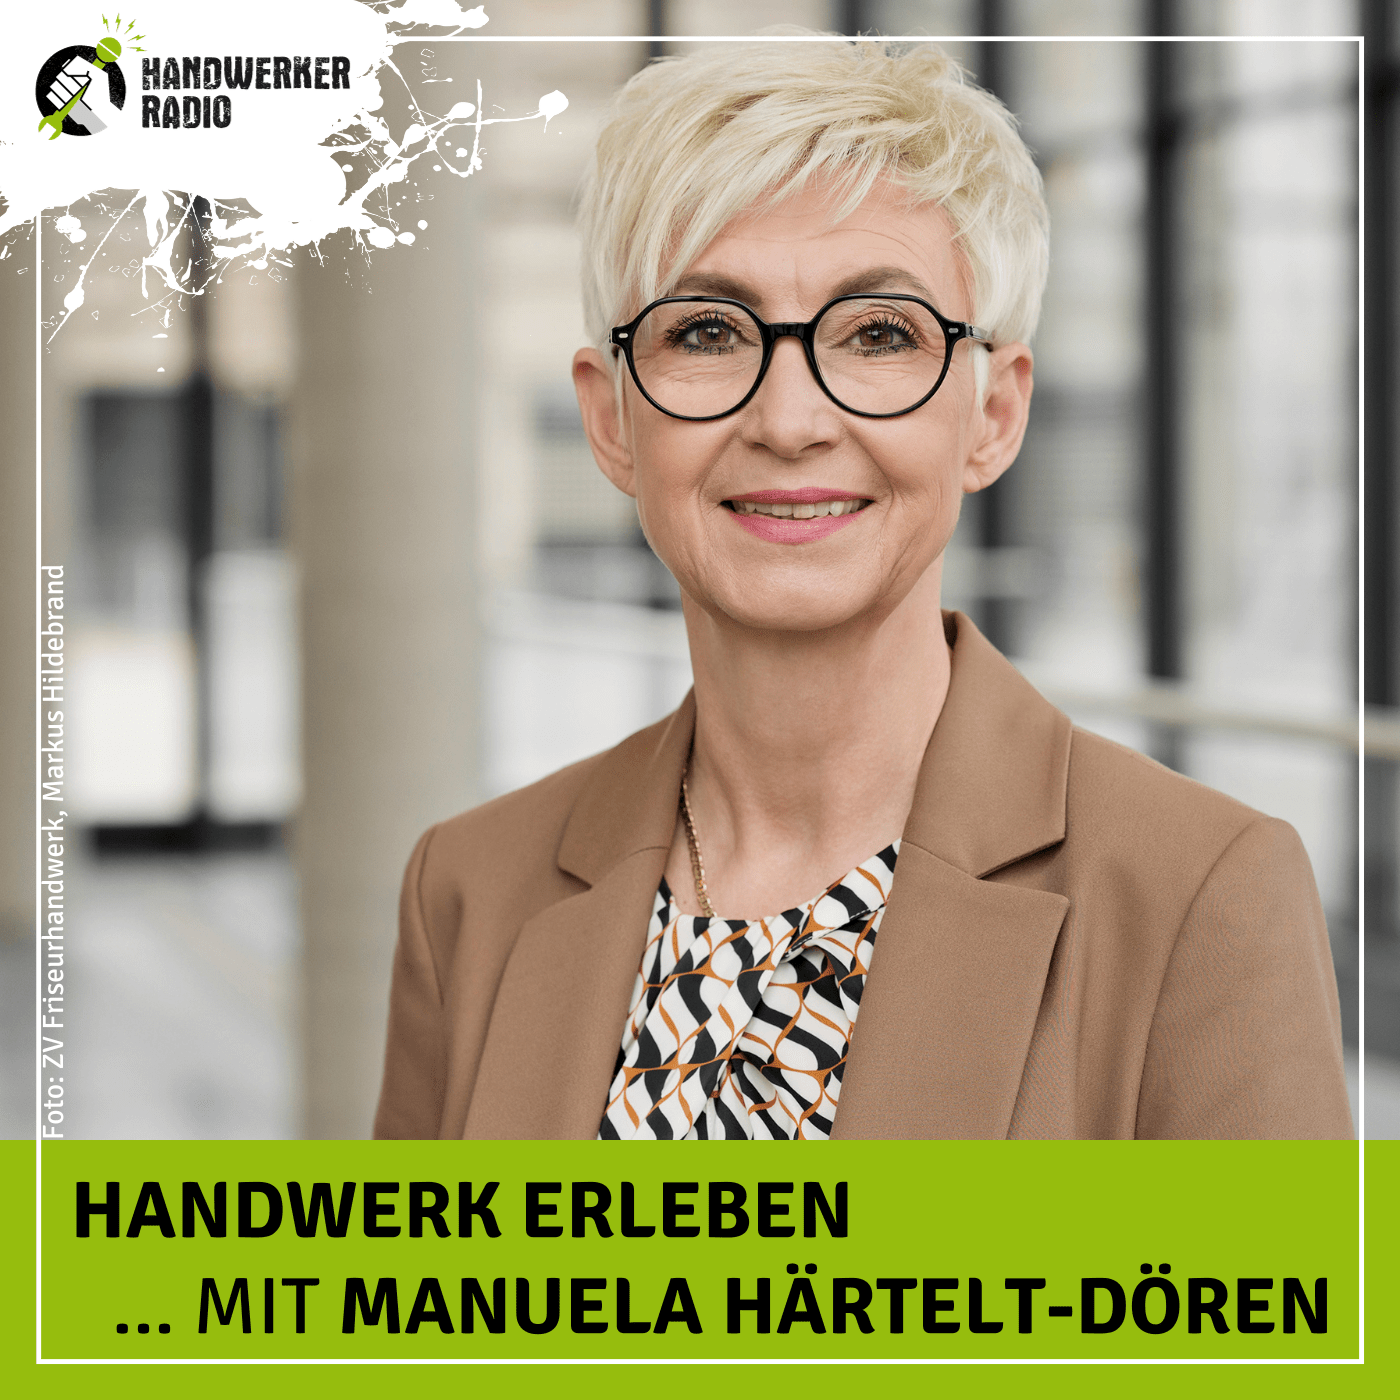 #51 Manuela Härtelt-Dören, mit welchen Herausforderungen hat das Friseurhandwerk zu kämpfen?